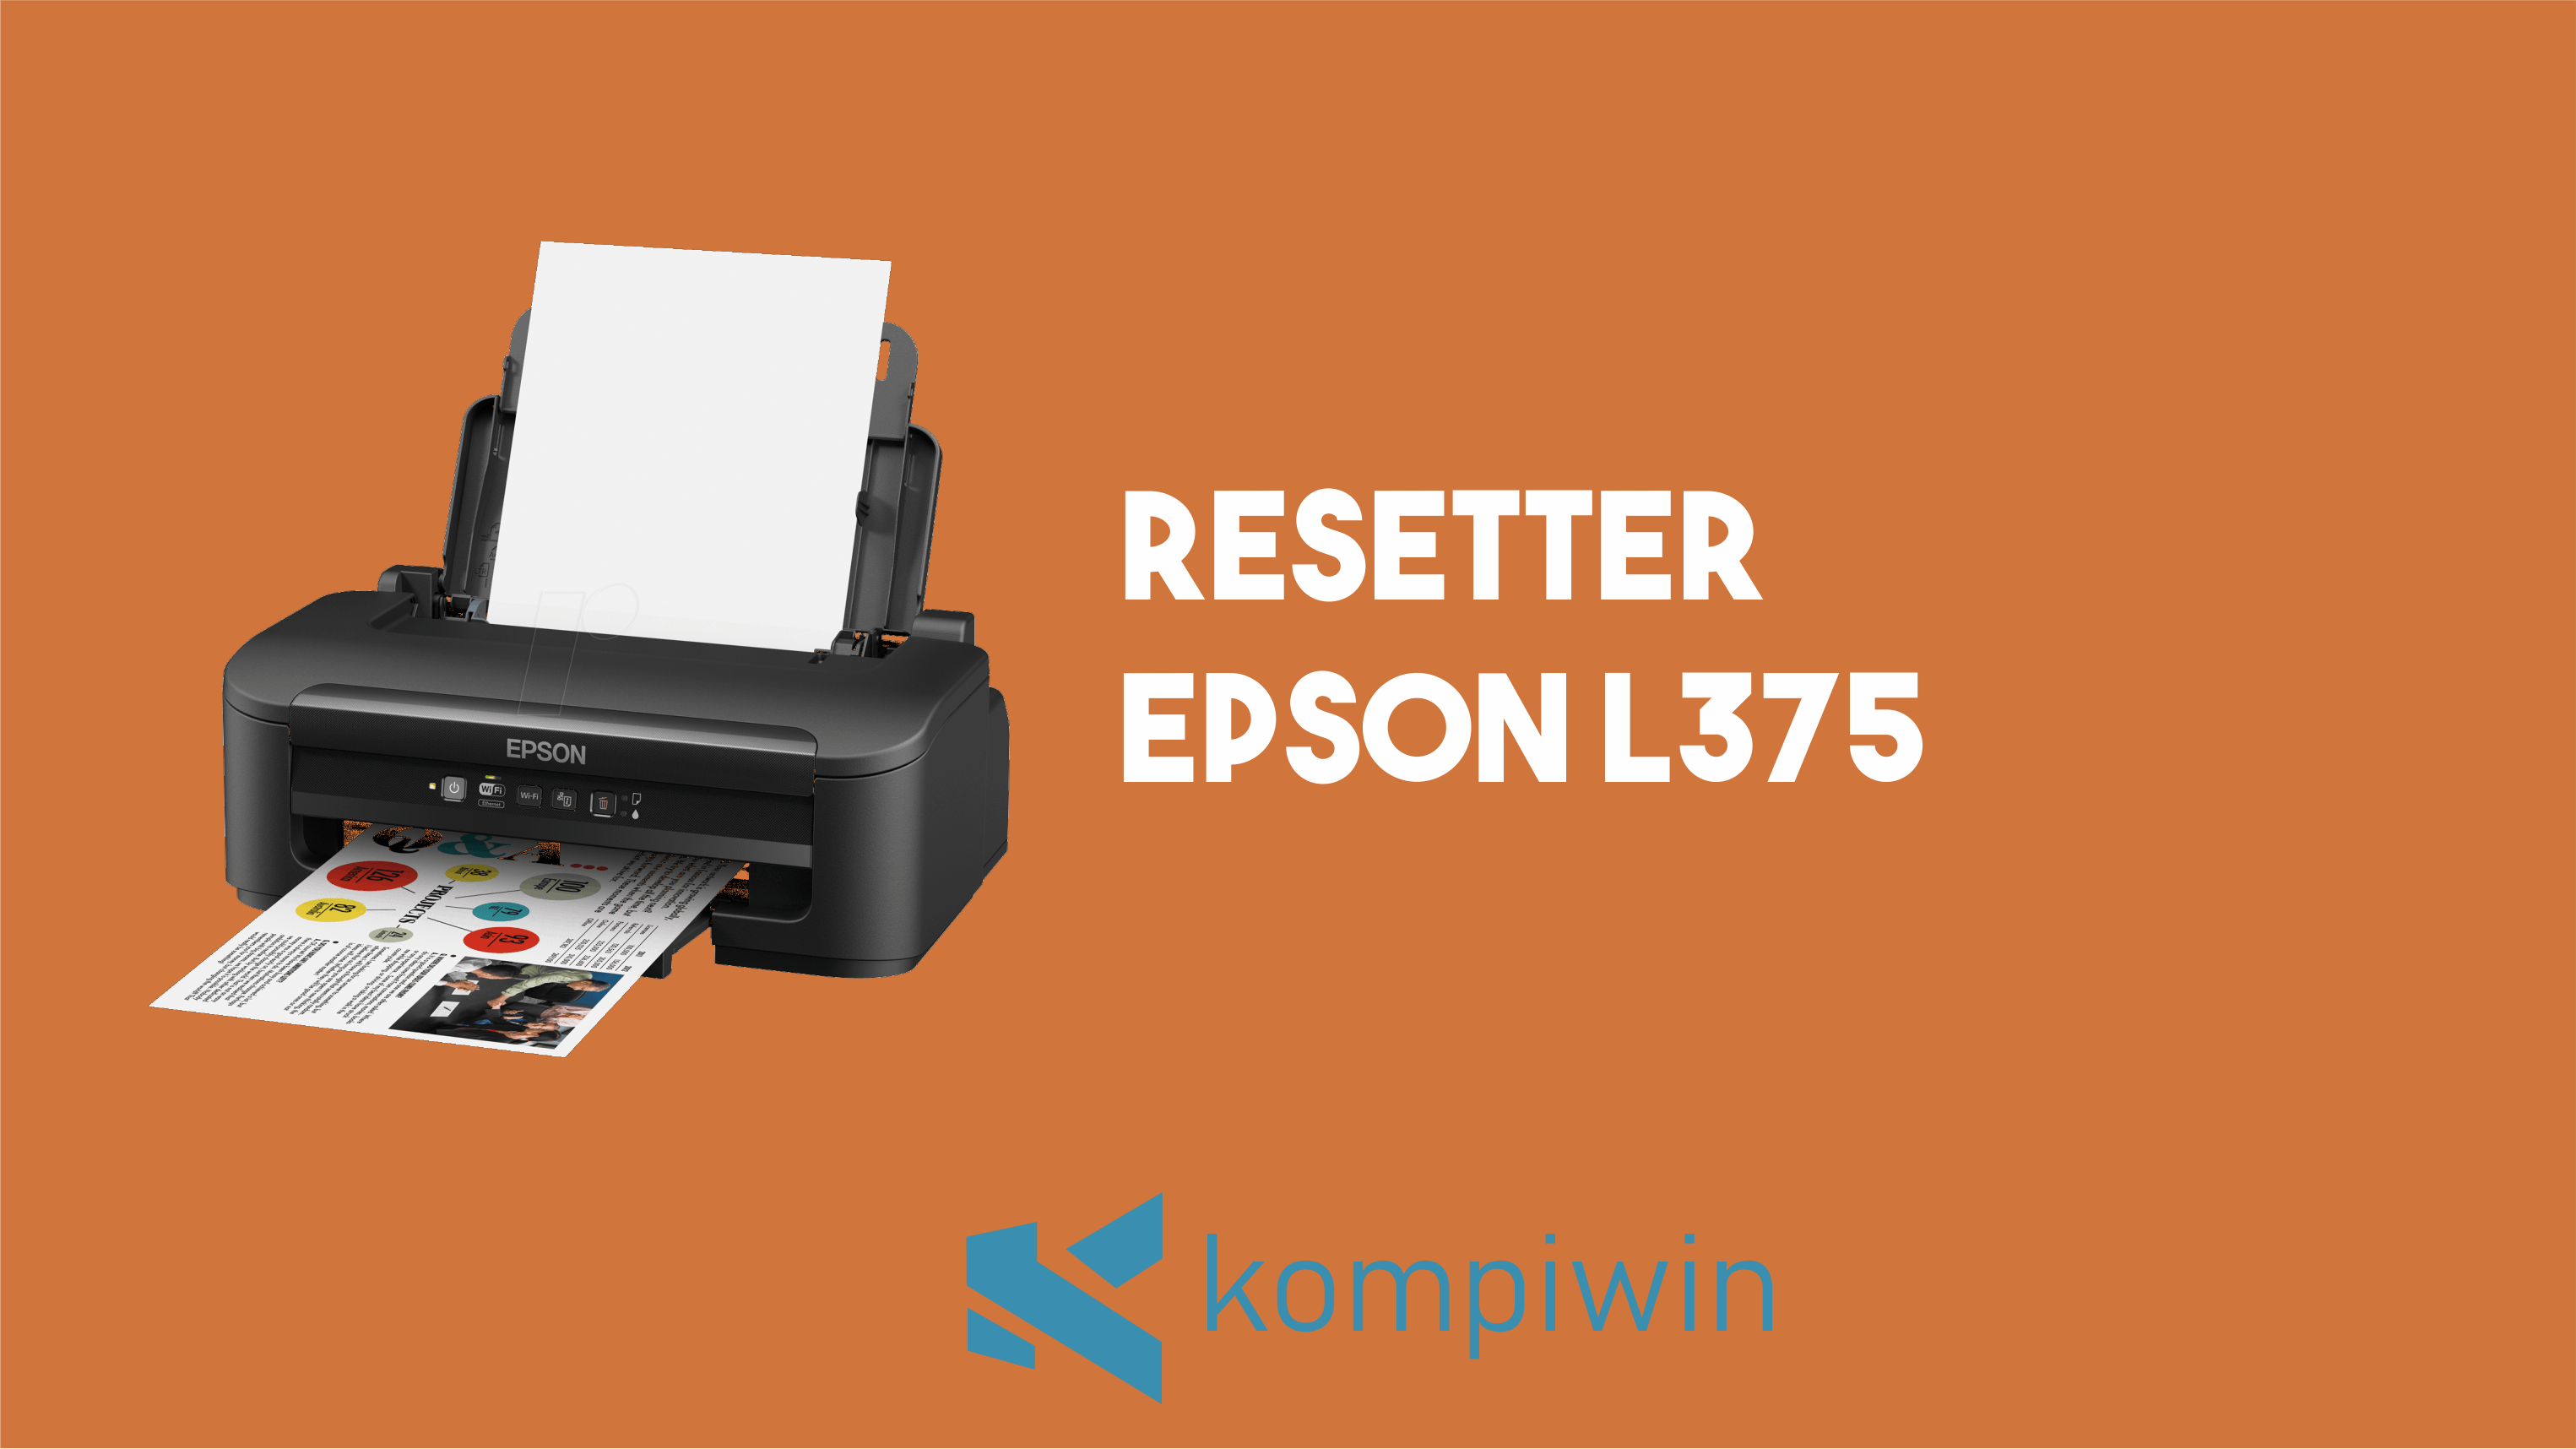 Resetter Epson L375